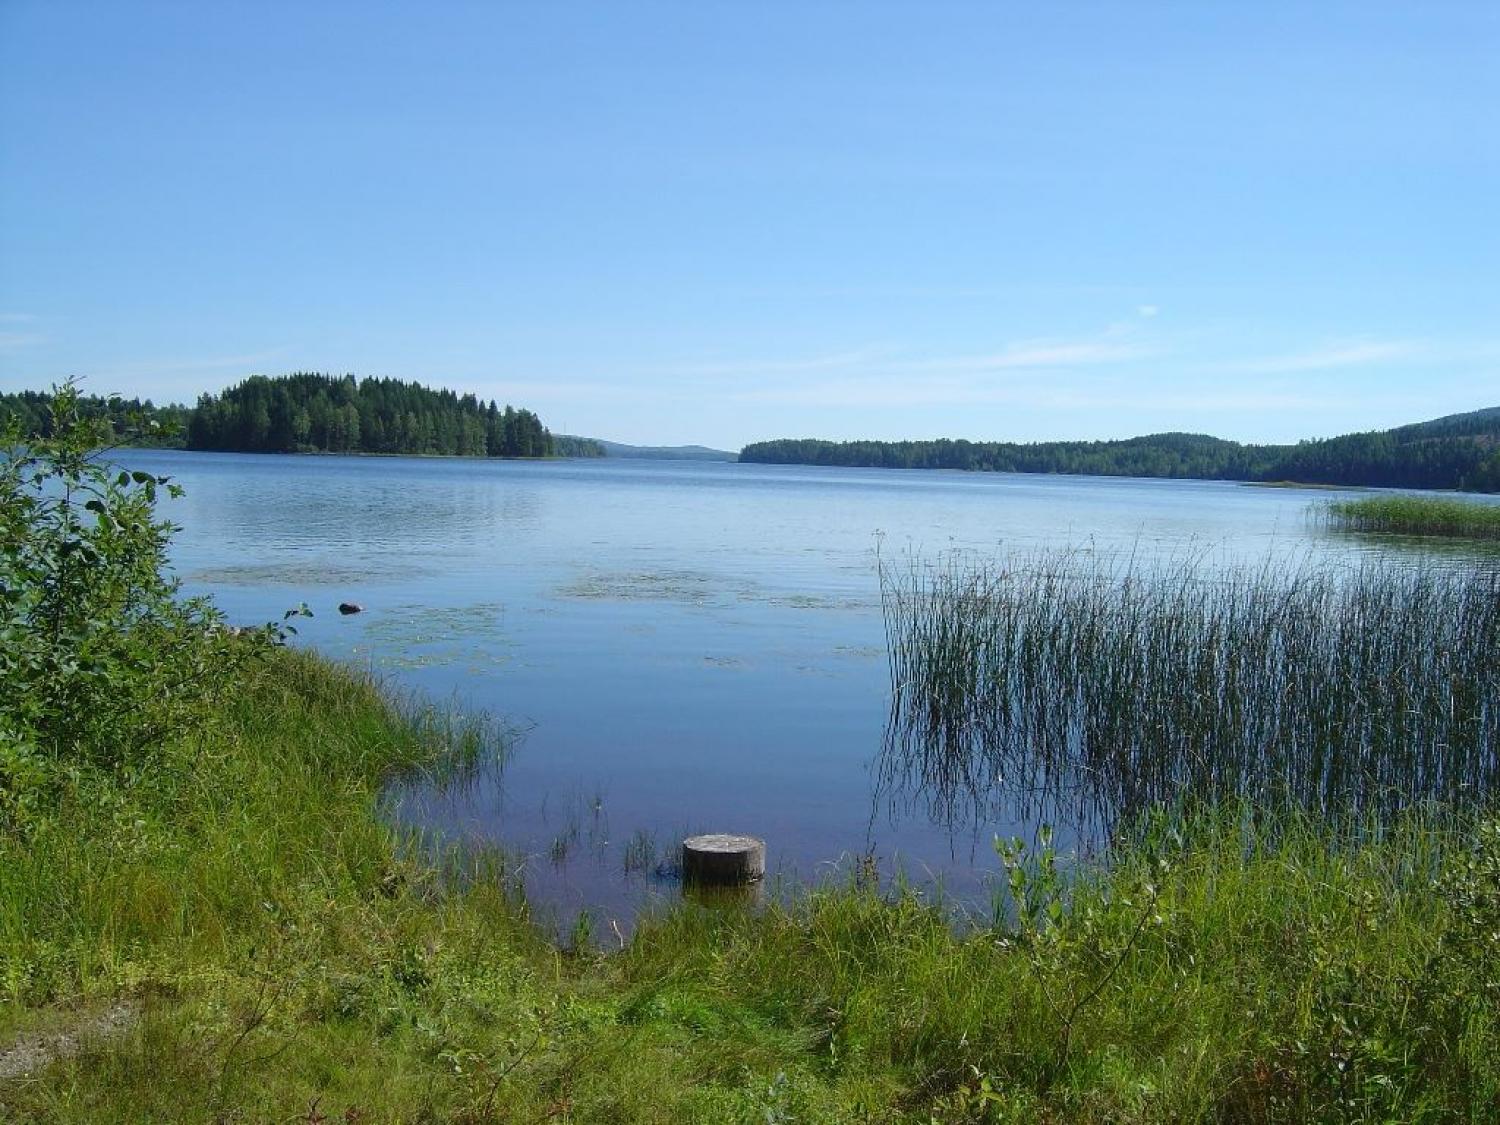 Ånäset - naturreservat